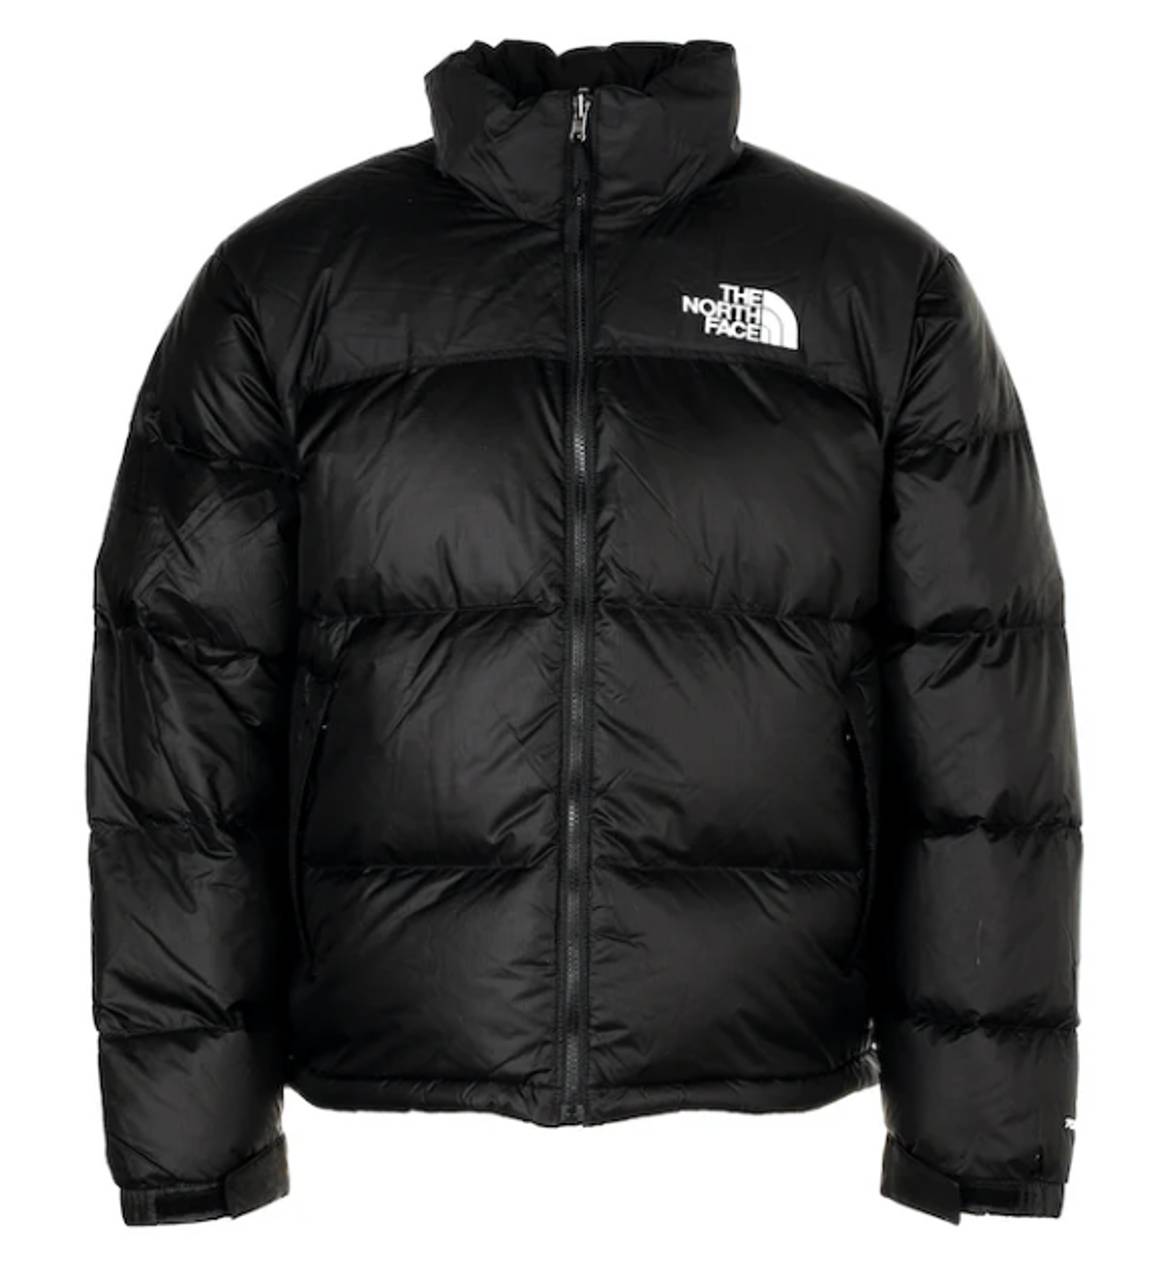 Die '1996 Retro Nuptse 700' von The North Face ist eines der beliebtesten Kleidungsstücke auf StockX